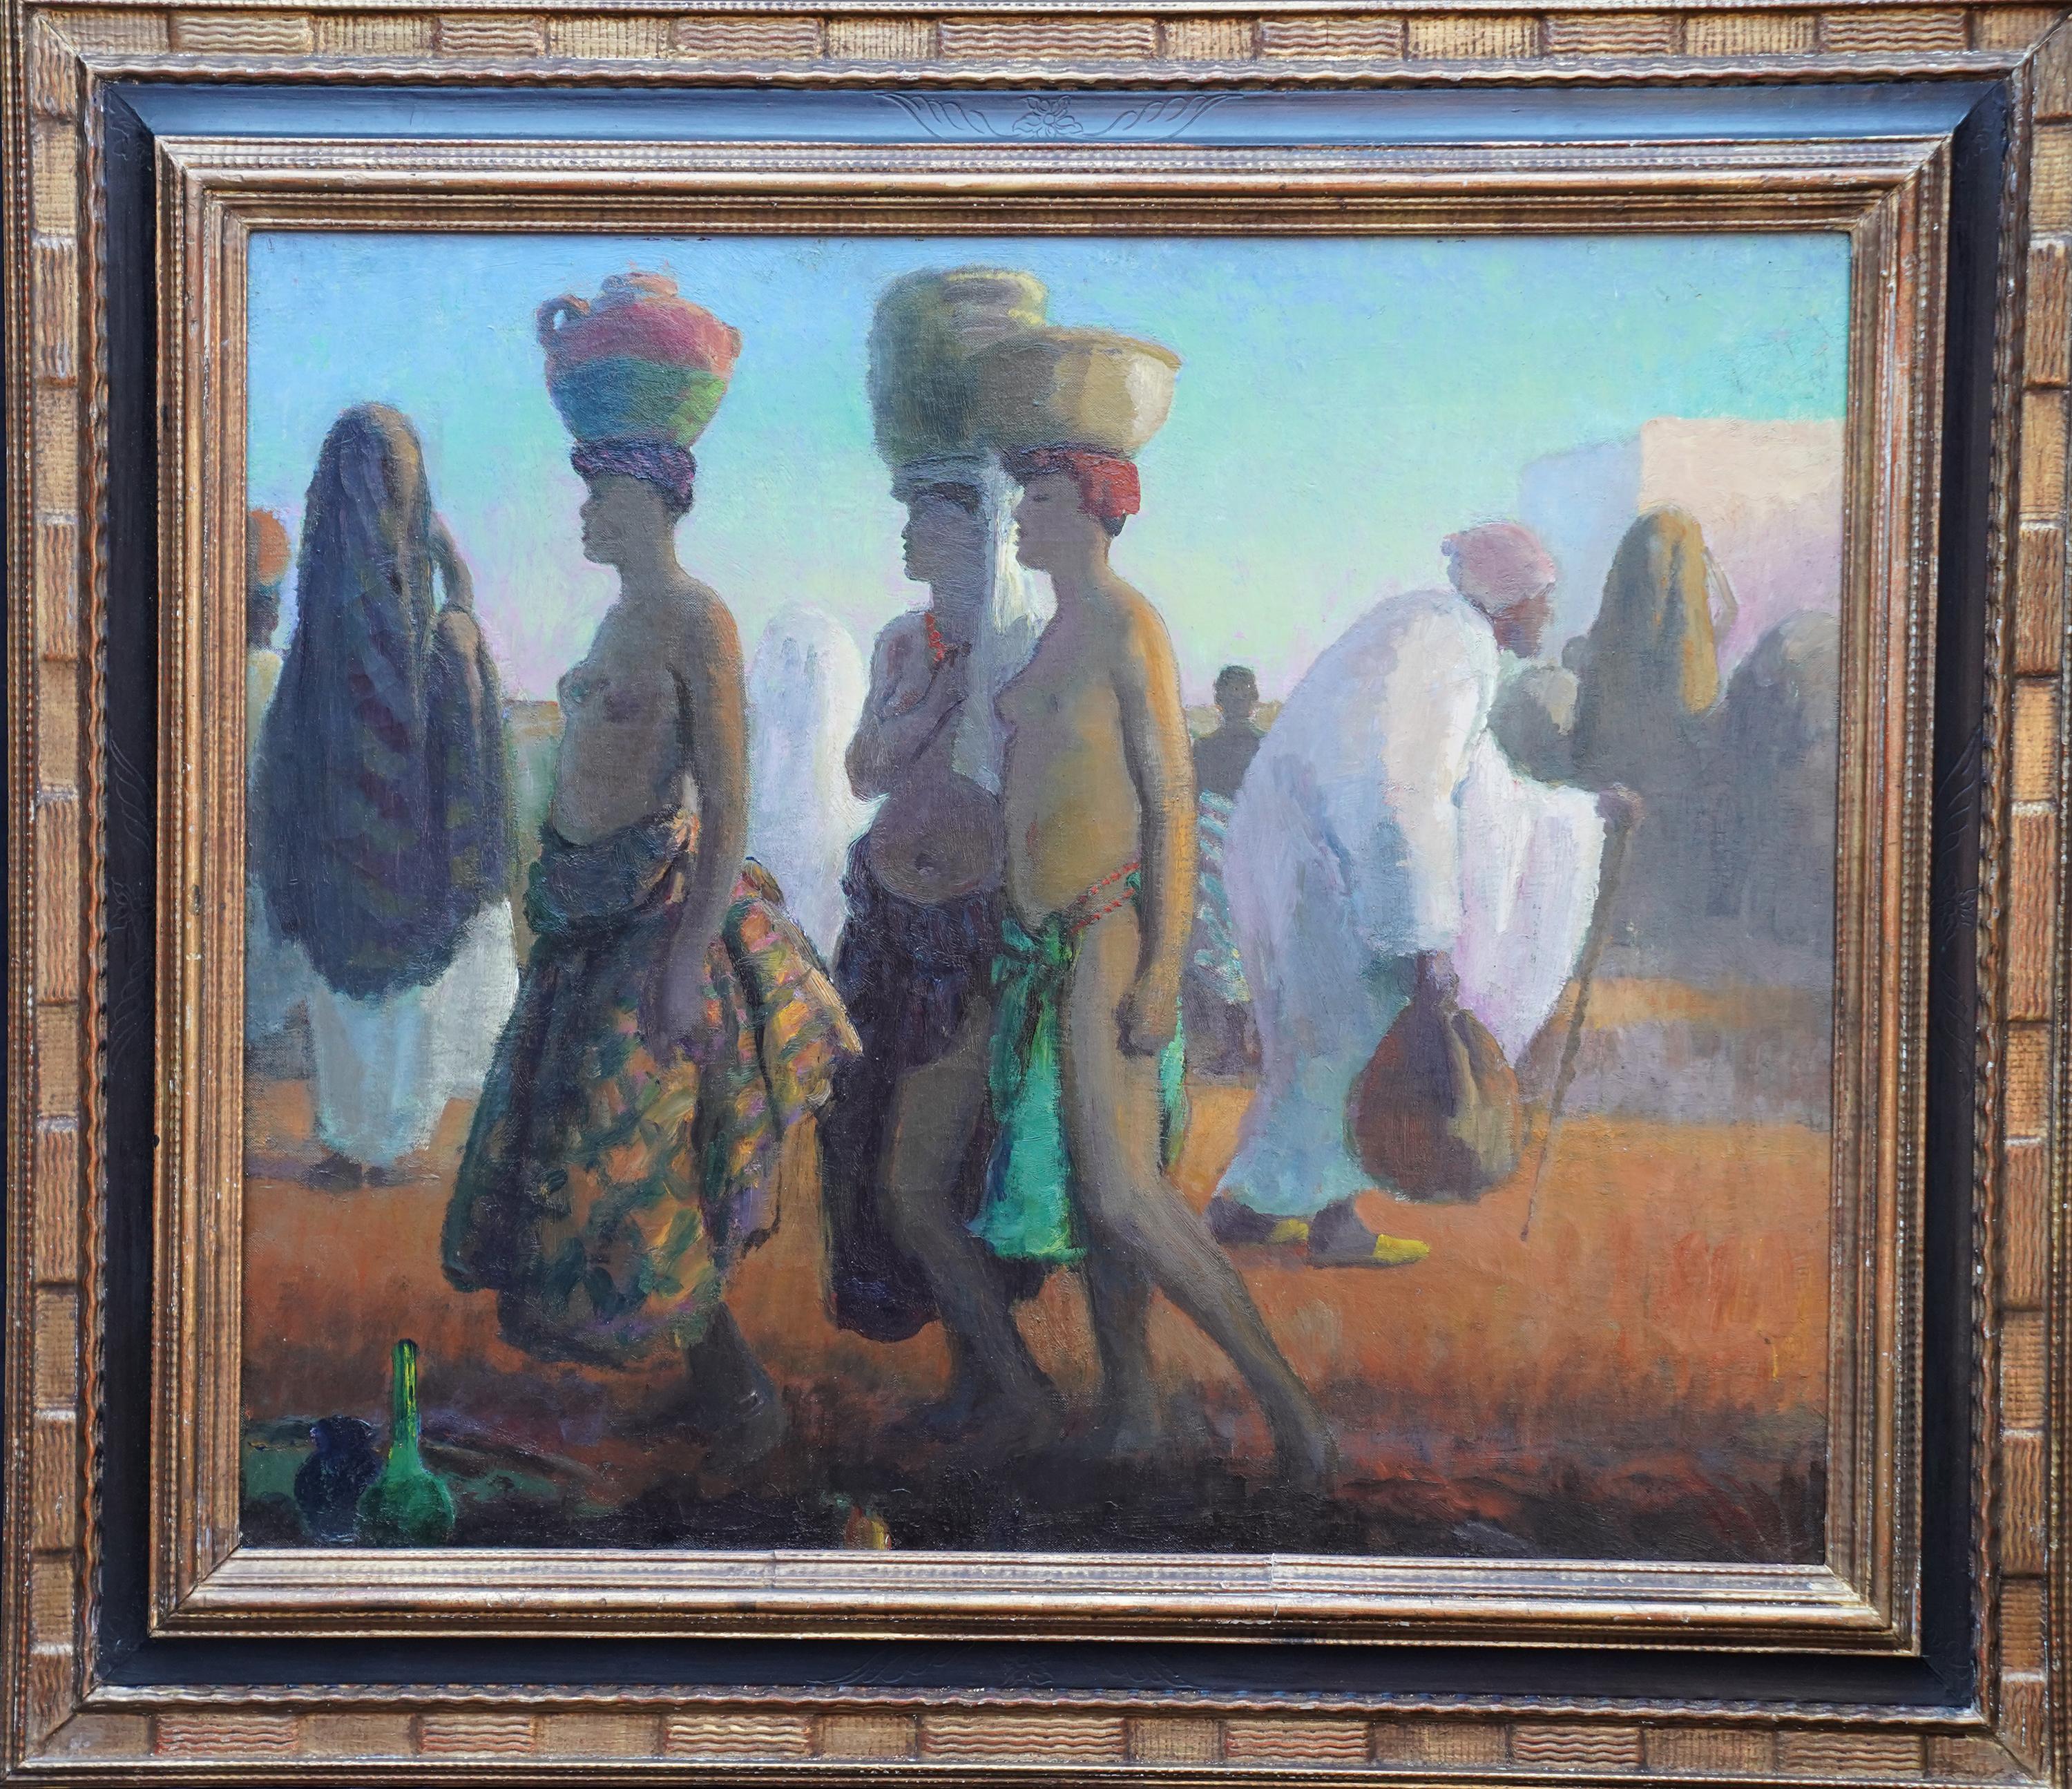 Figurative Painting di Spencer Pryse - Ritratto di portatori d'acqua, Africa - pittura ad olio di arte orientalista britannica del 1920